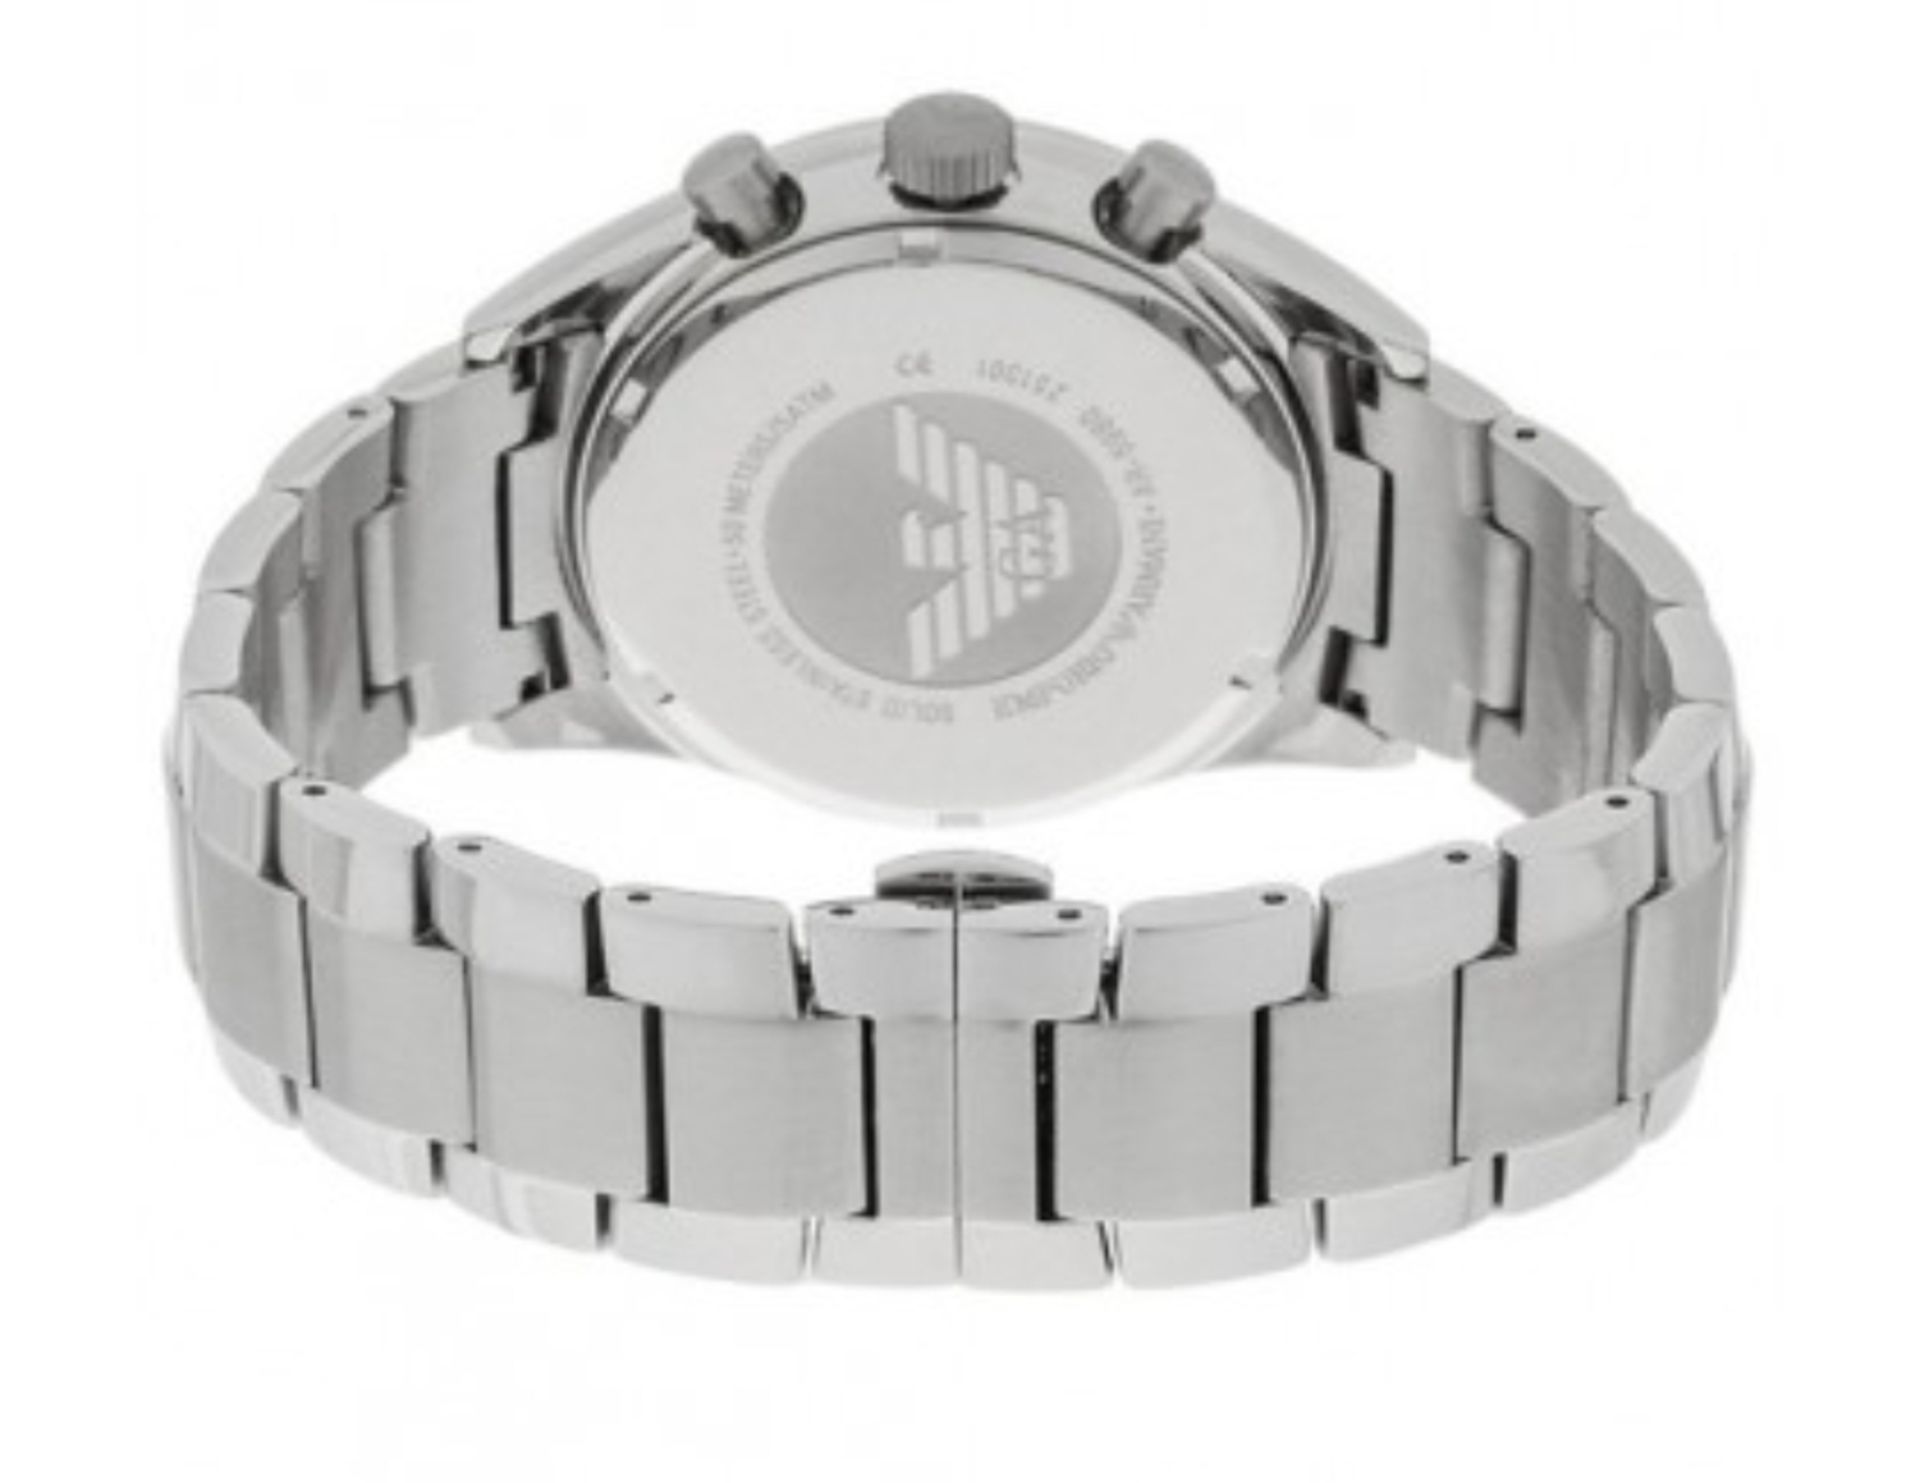 Emporio Armani AR5980 Men's Sportivo Black Dial Silver Bracelet Quartz Chronograph Watch - Image 6 of 7